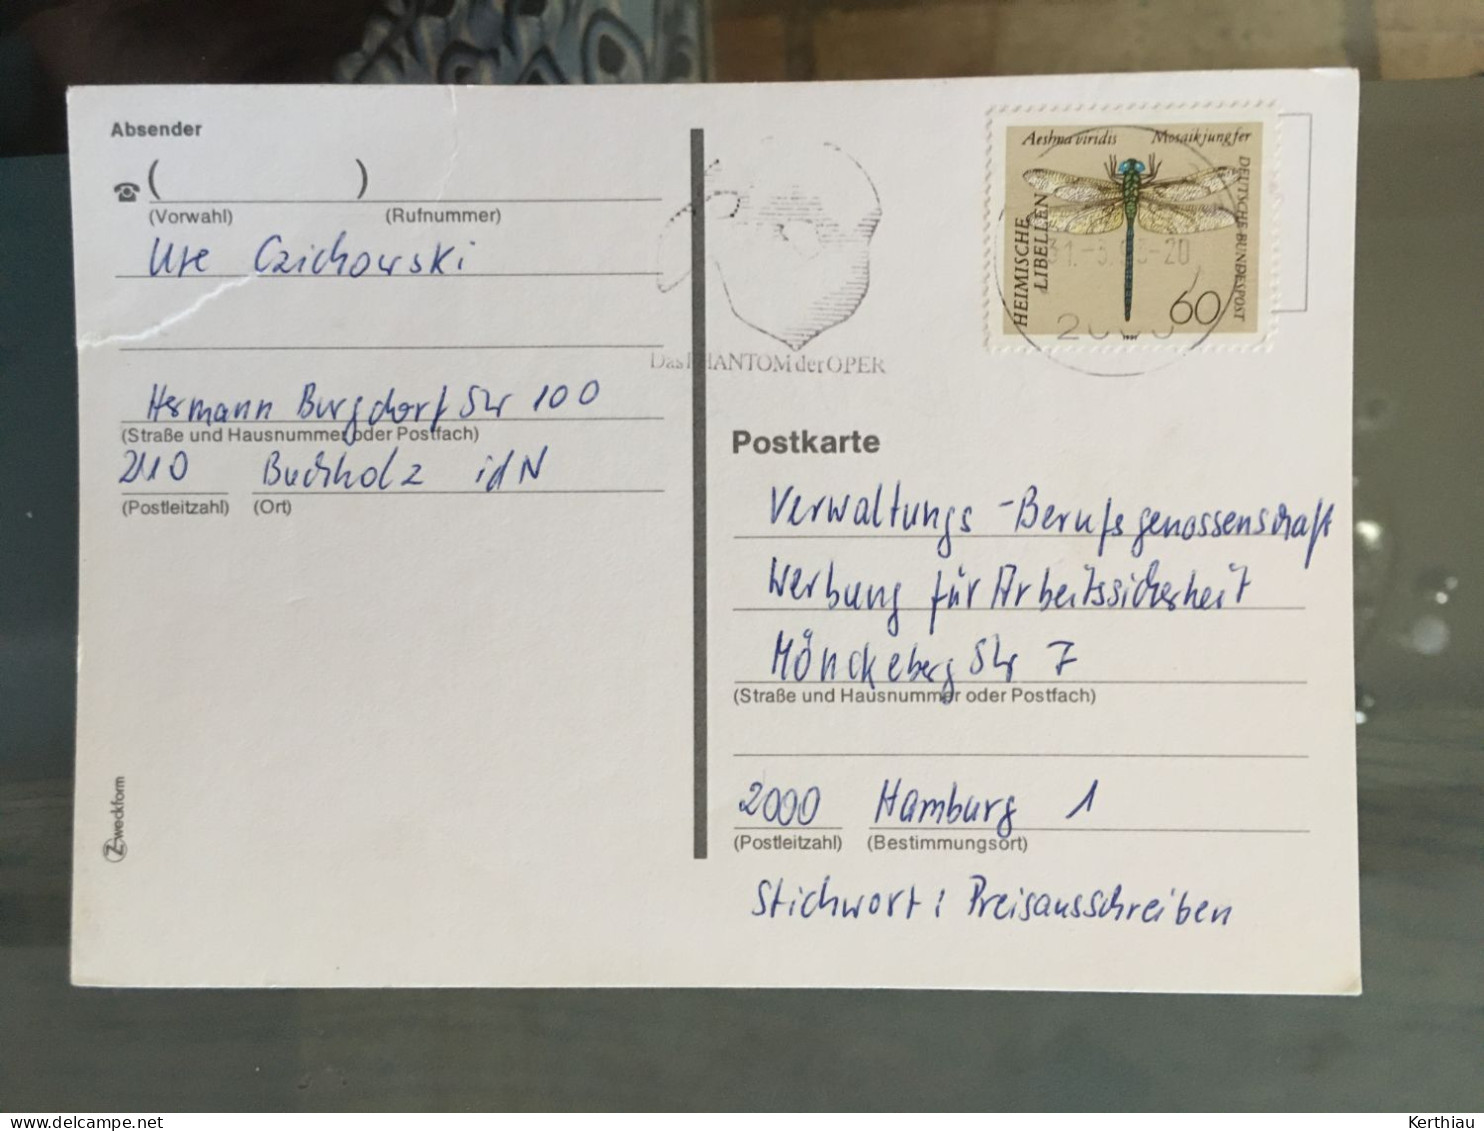 Allemagne -5 entiers postaux  et 5 cartes postales dos blanc.  Années 70-90 (réponses à jeux concours)